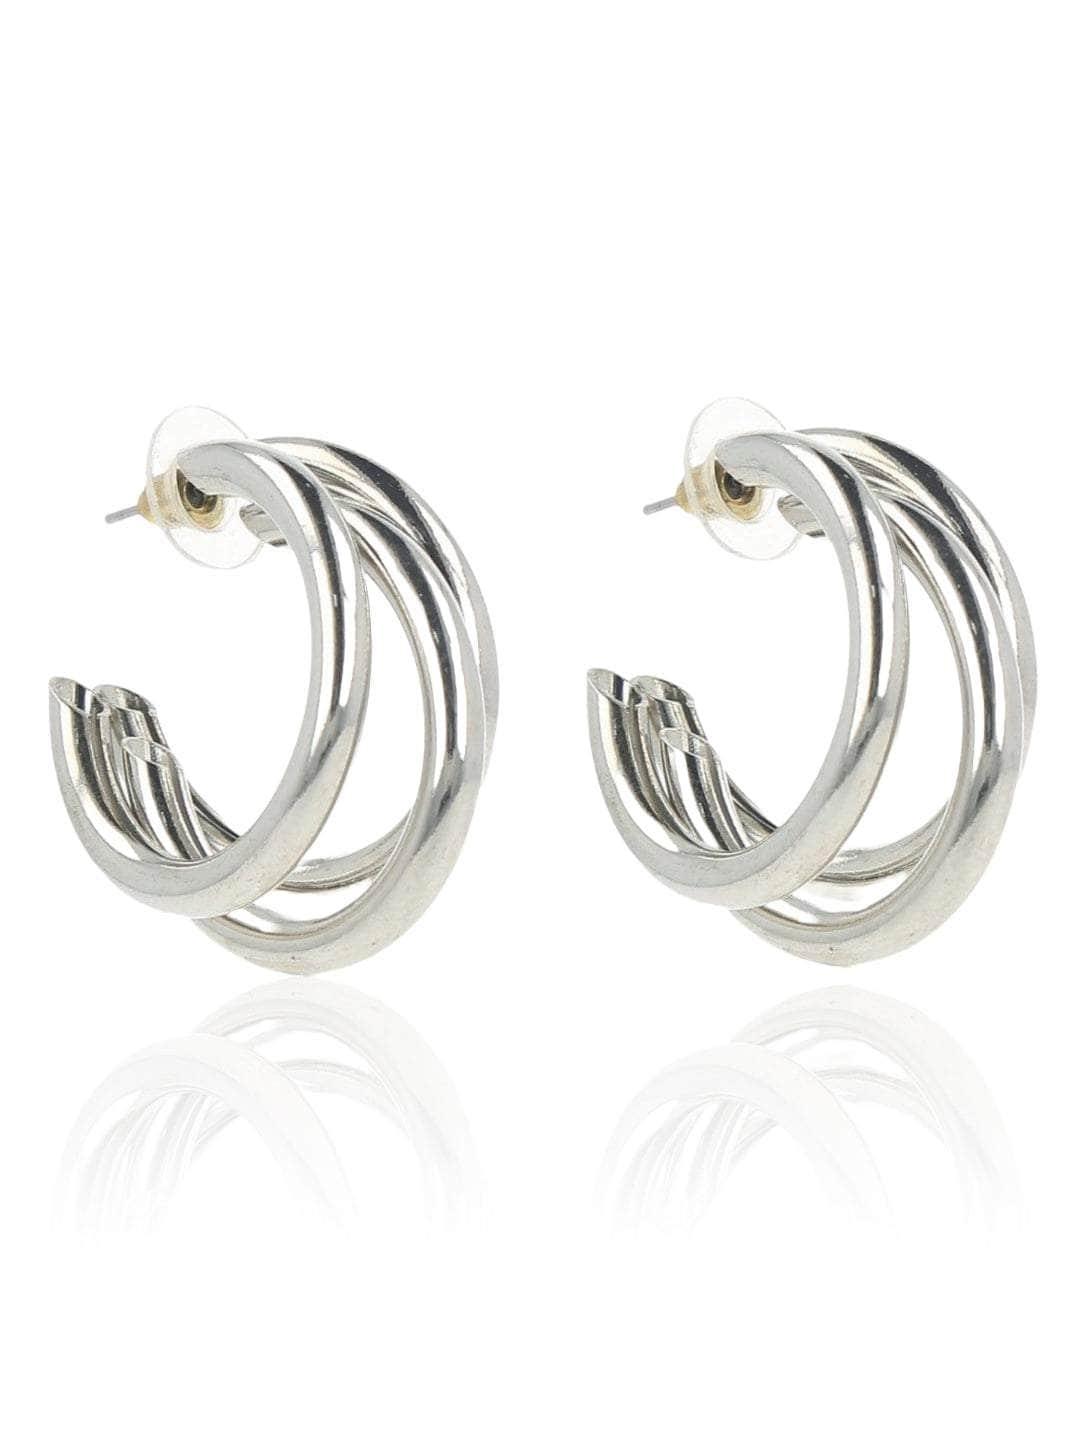 Ishhaara Huma Qureshi In Triple Hoop Earrings Silver